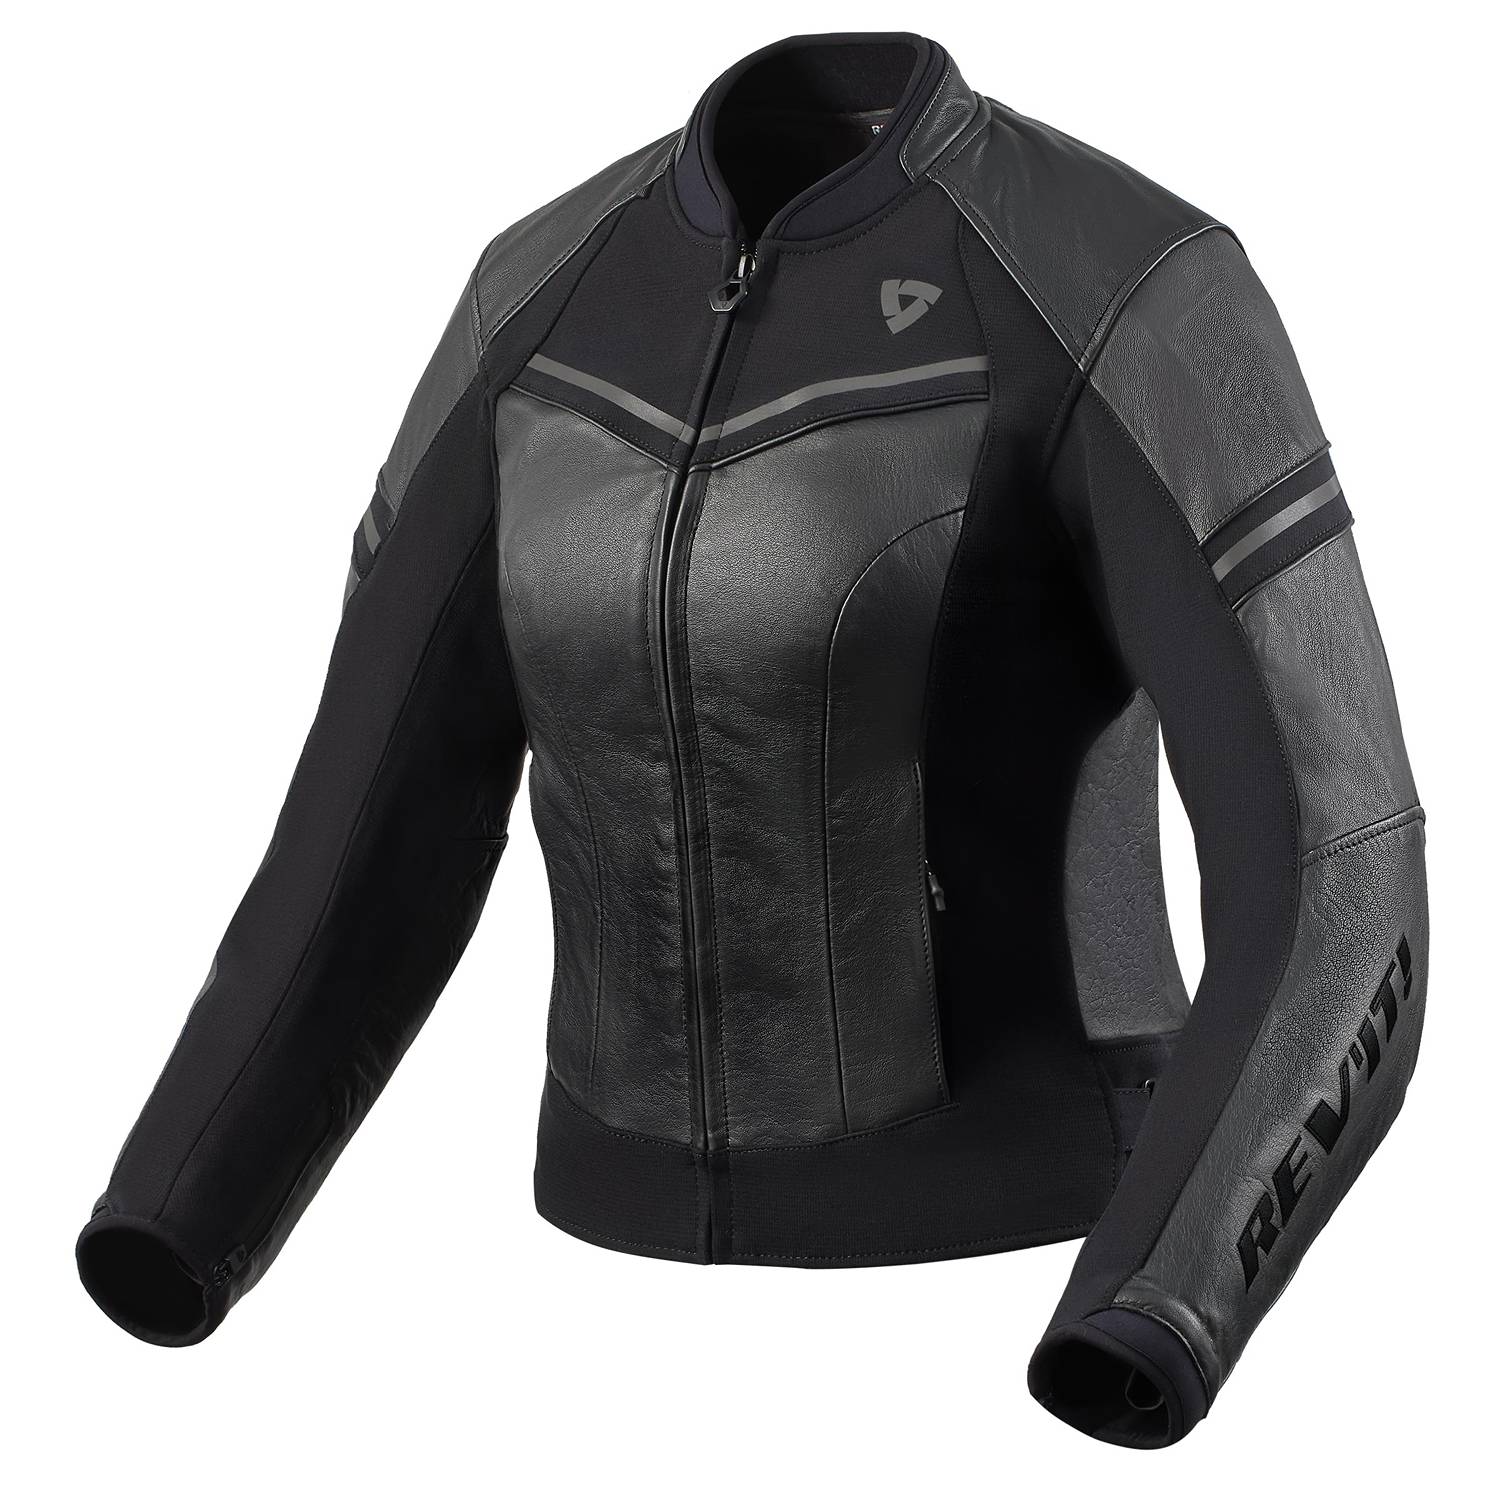 Image of REV'IT! Median Ladies Jacket Black Anthracite Size 44 EN